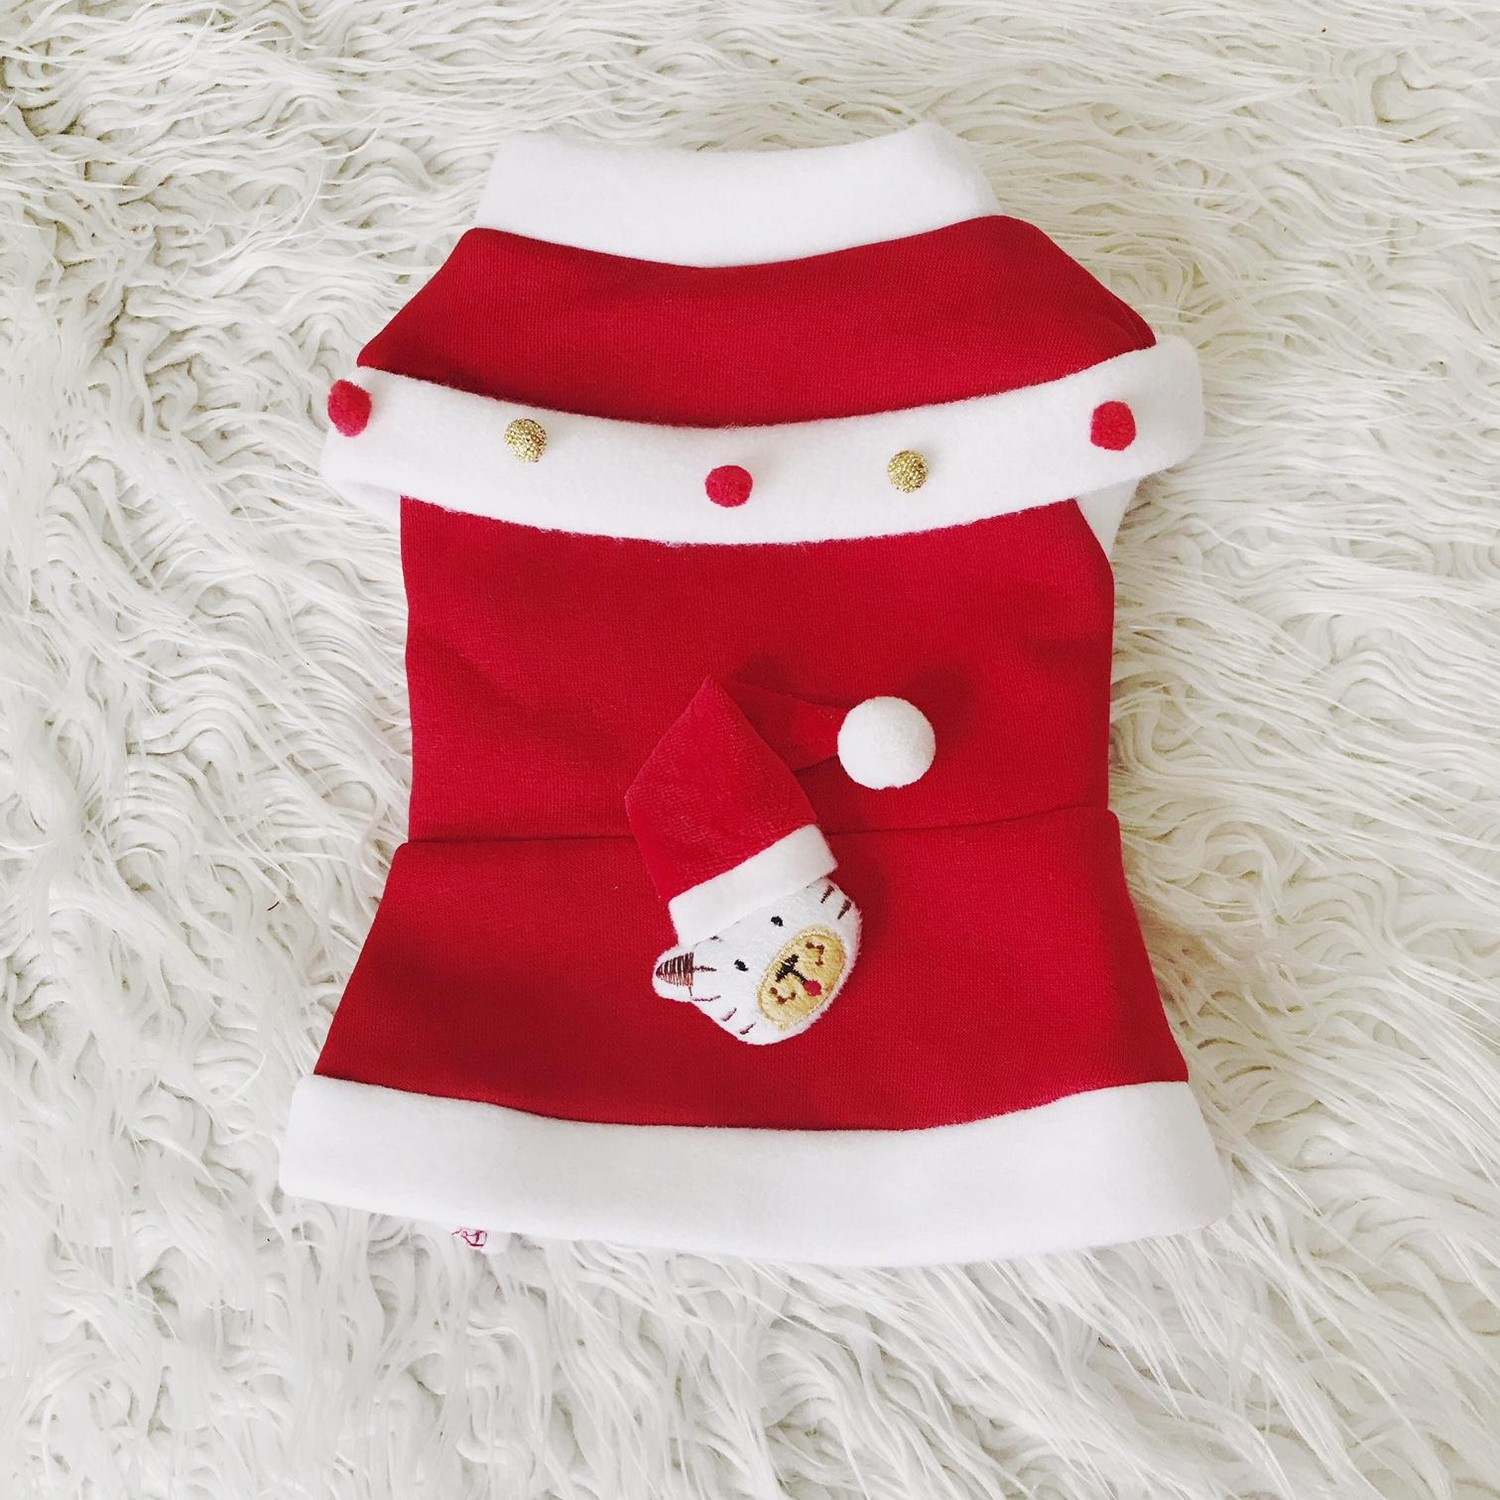 Kemique Cat Santa Elbisesi Noel By Kemique Kedi Kıyafeti Fiyatı